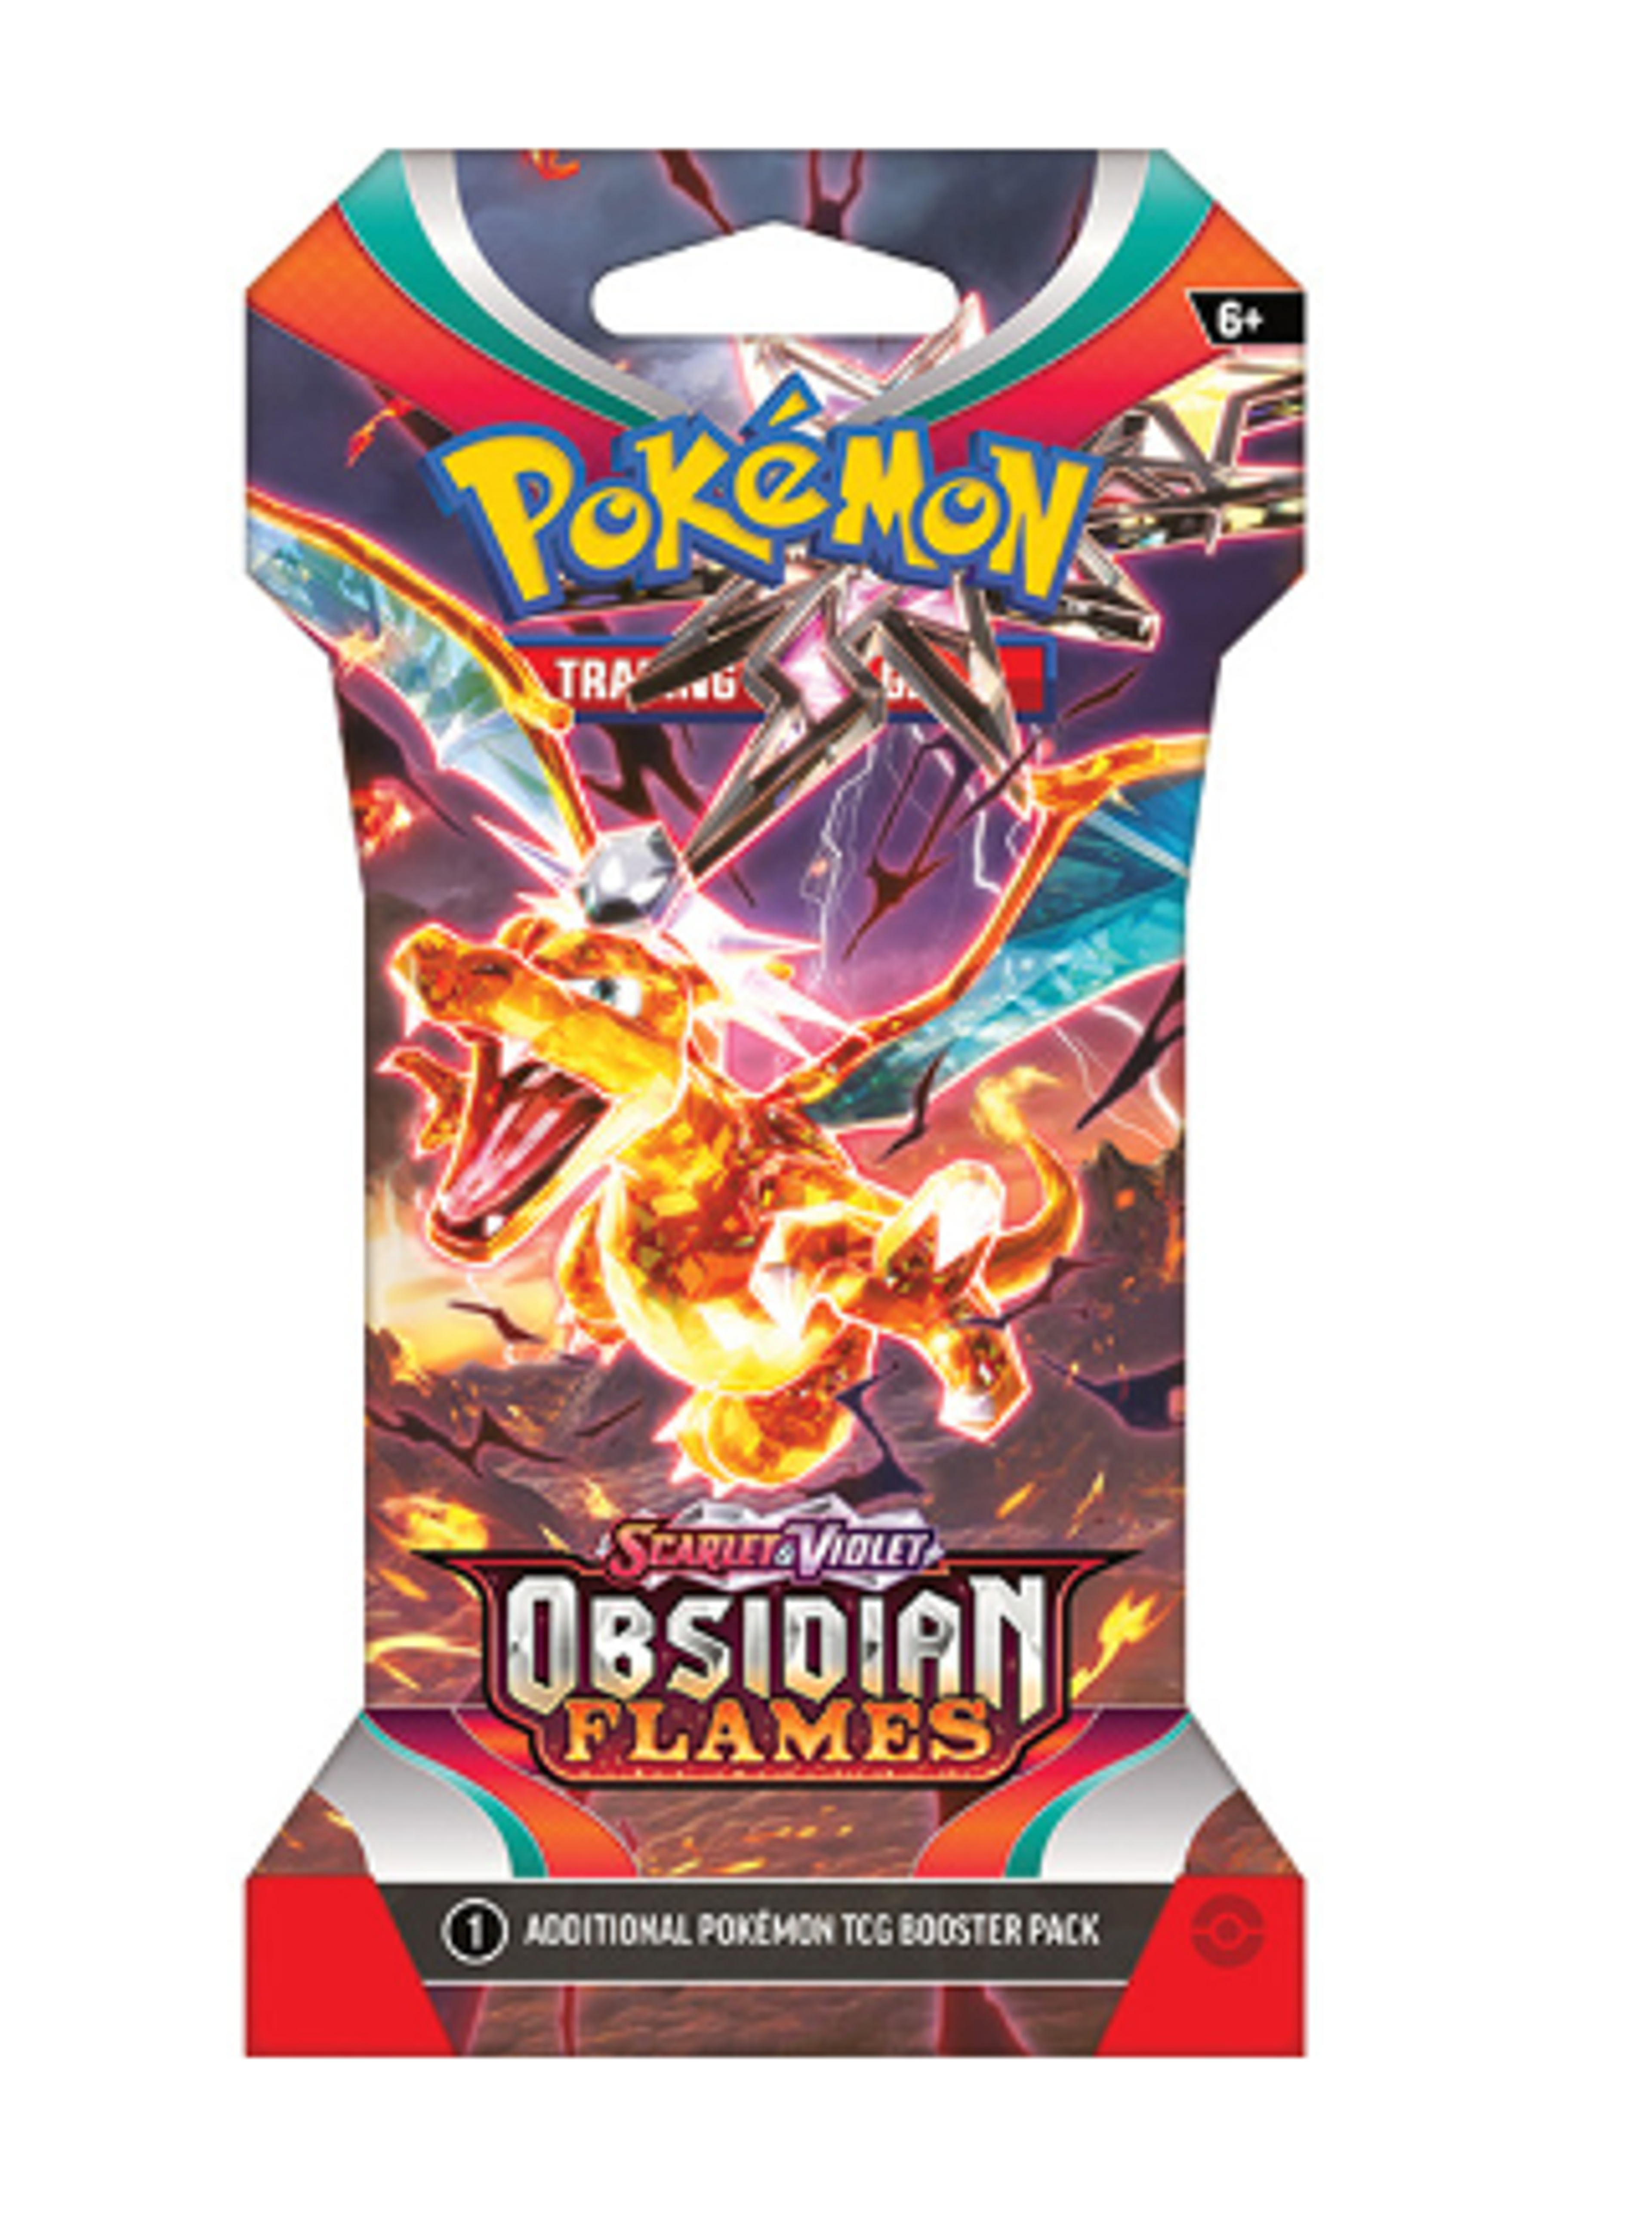 Pokémon: Obsidian Flames